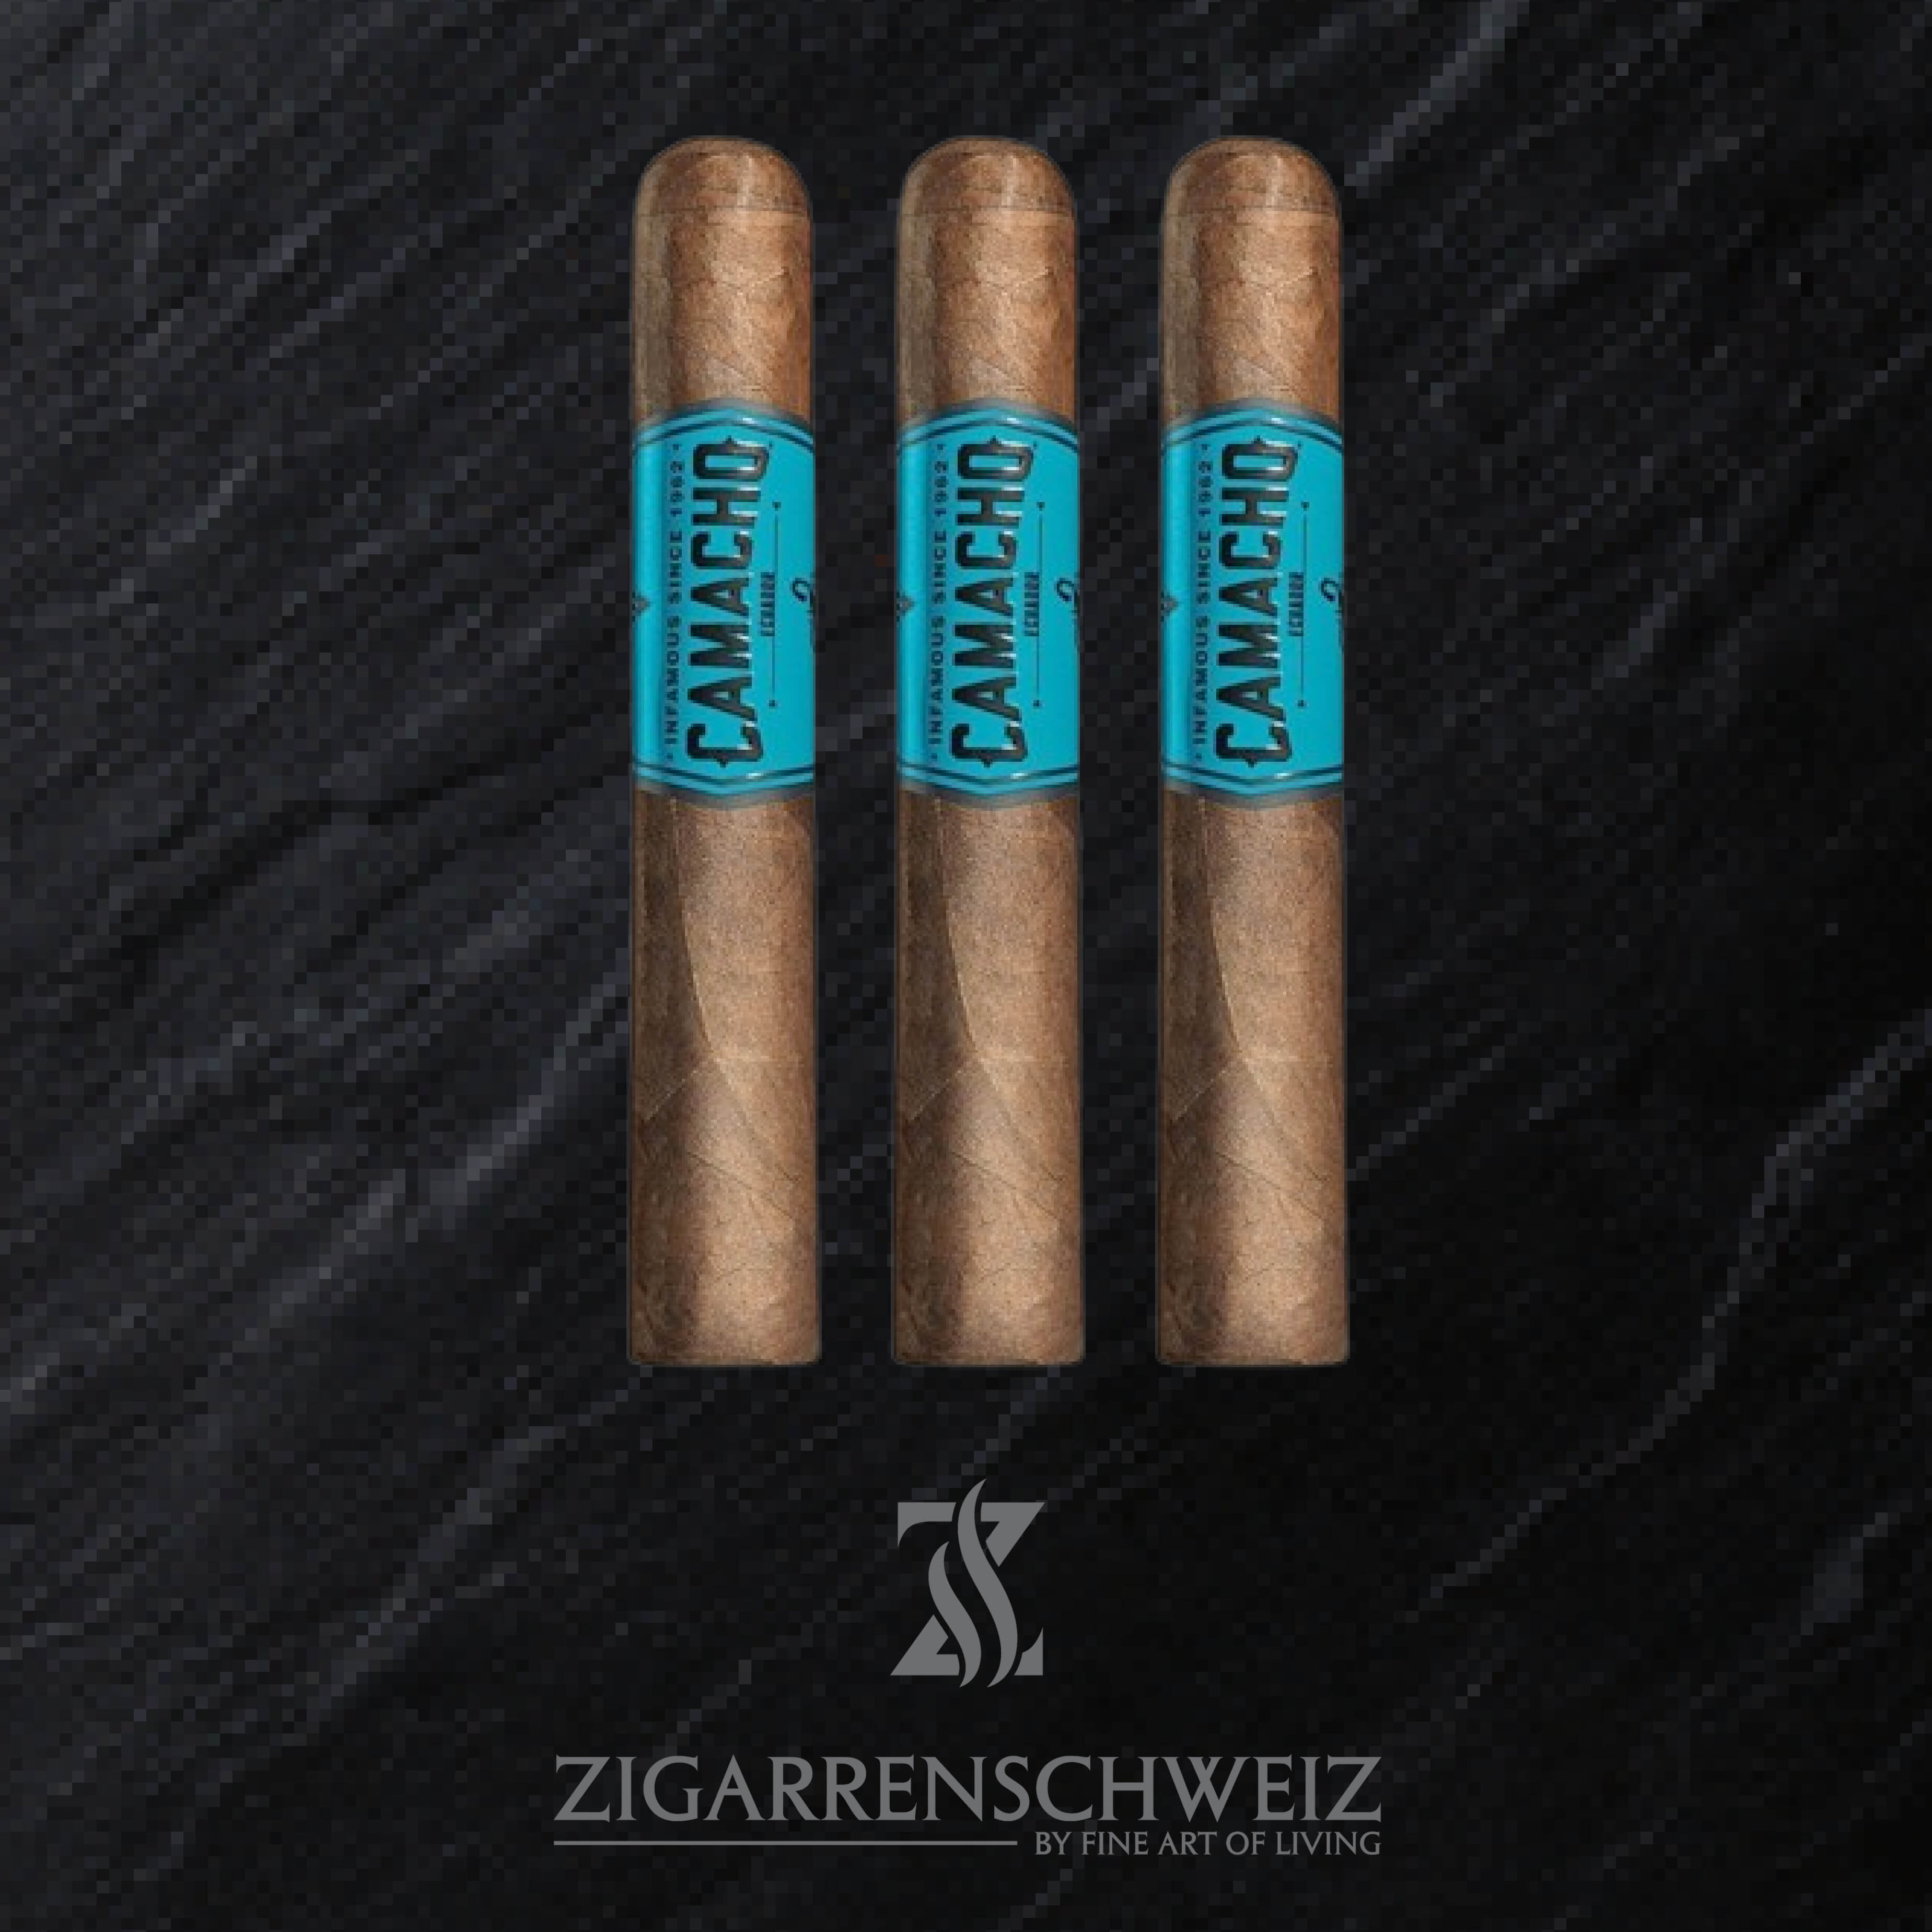 Camacho Ecuador Gordo Zigarren 3er Etui von Zigarren Schweiz